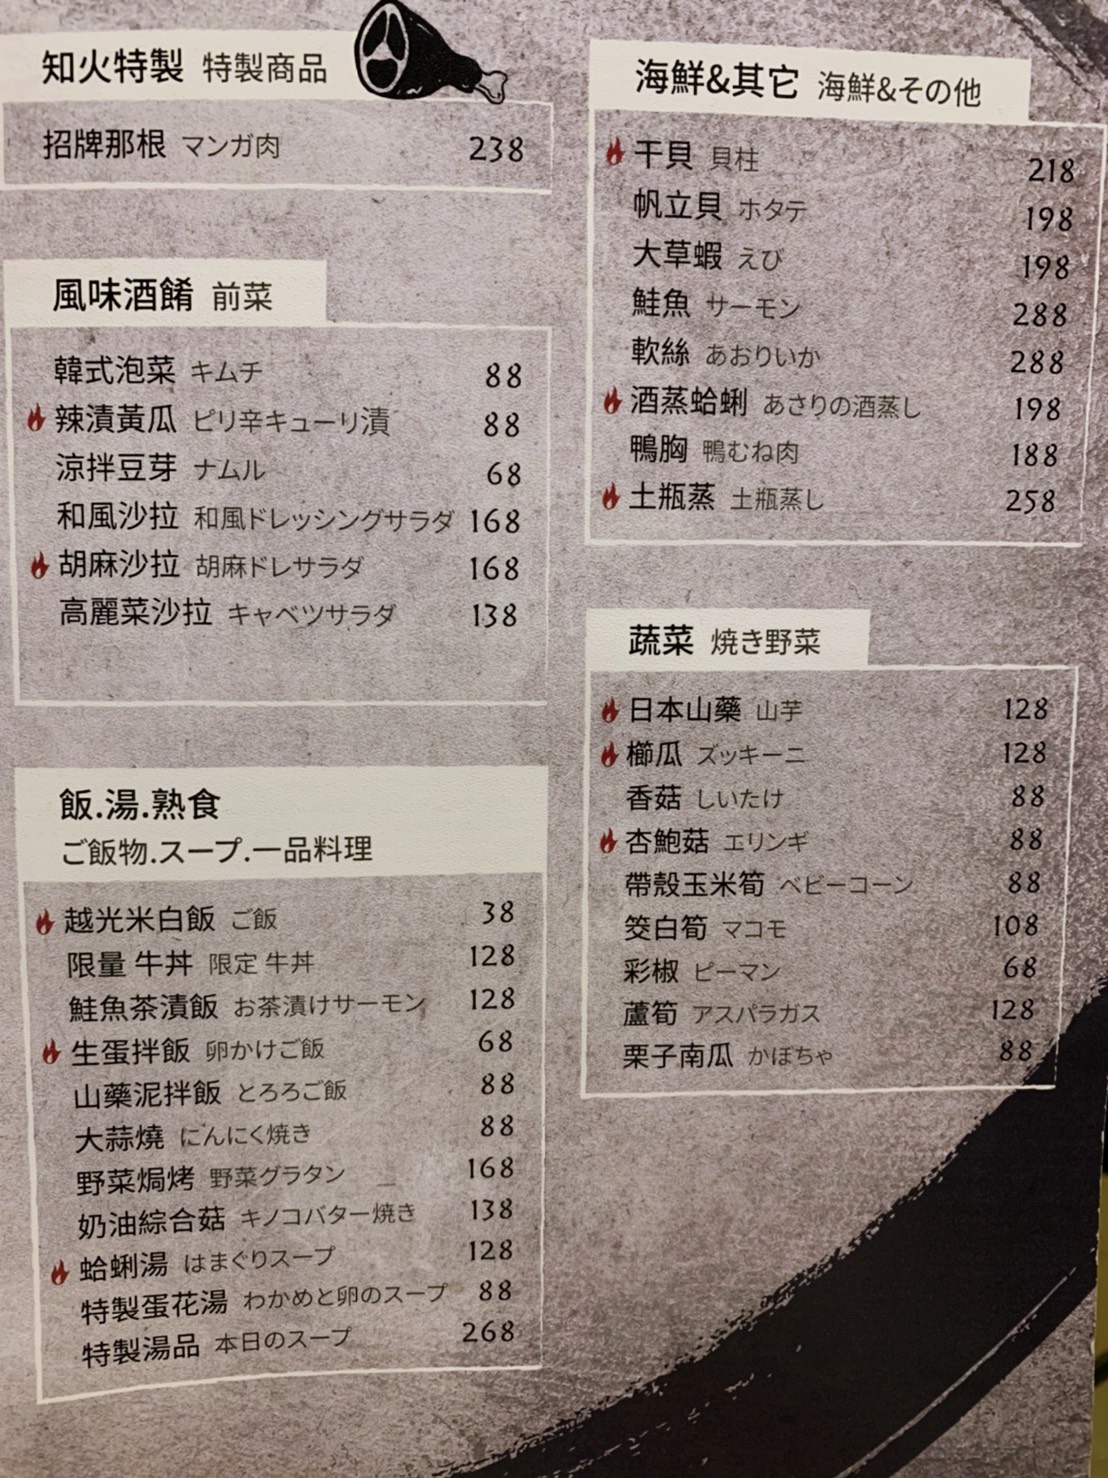 台南東區燒肉 知火Joyful Yakiniku精緻燒肉 內有菜單完整版圖文(更新2訪2021.05）